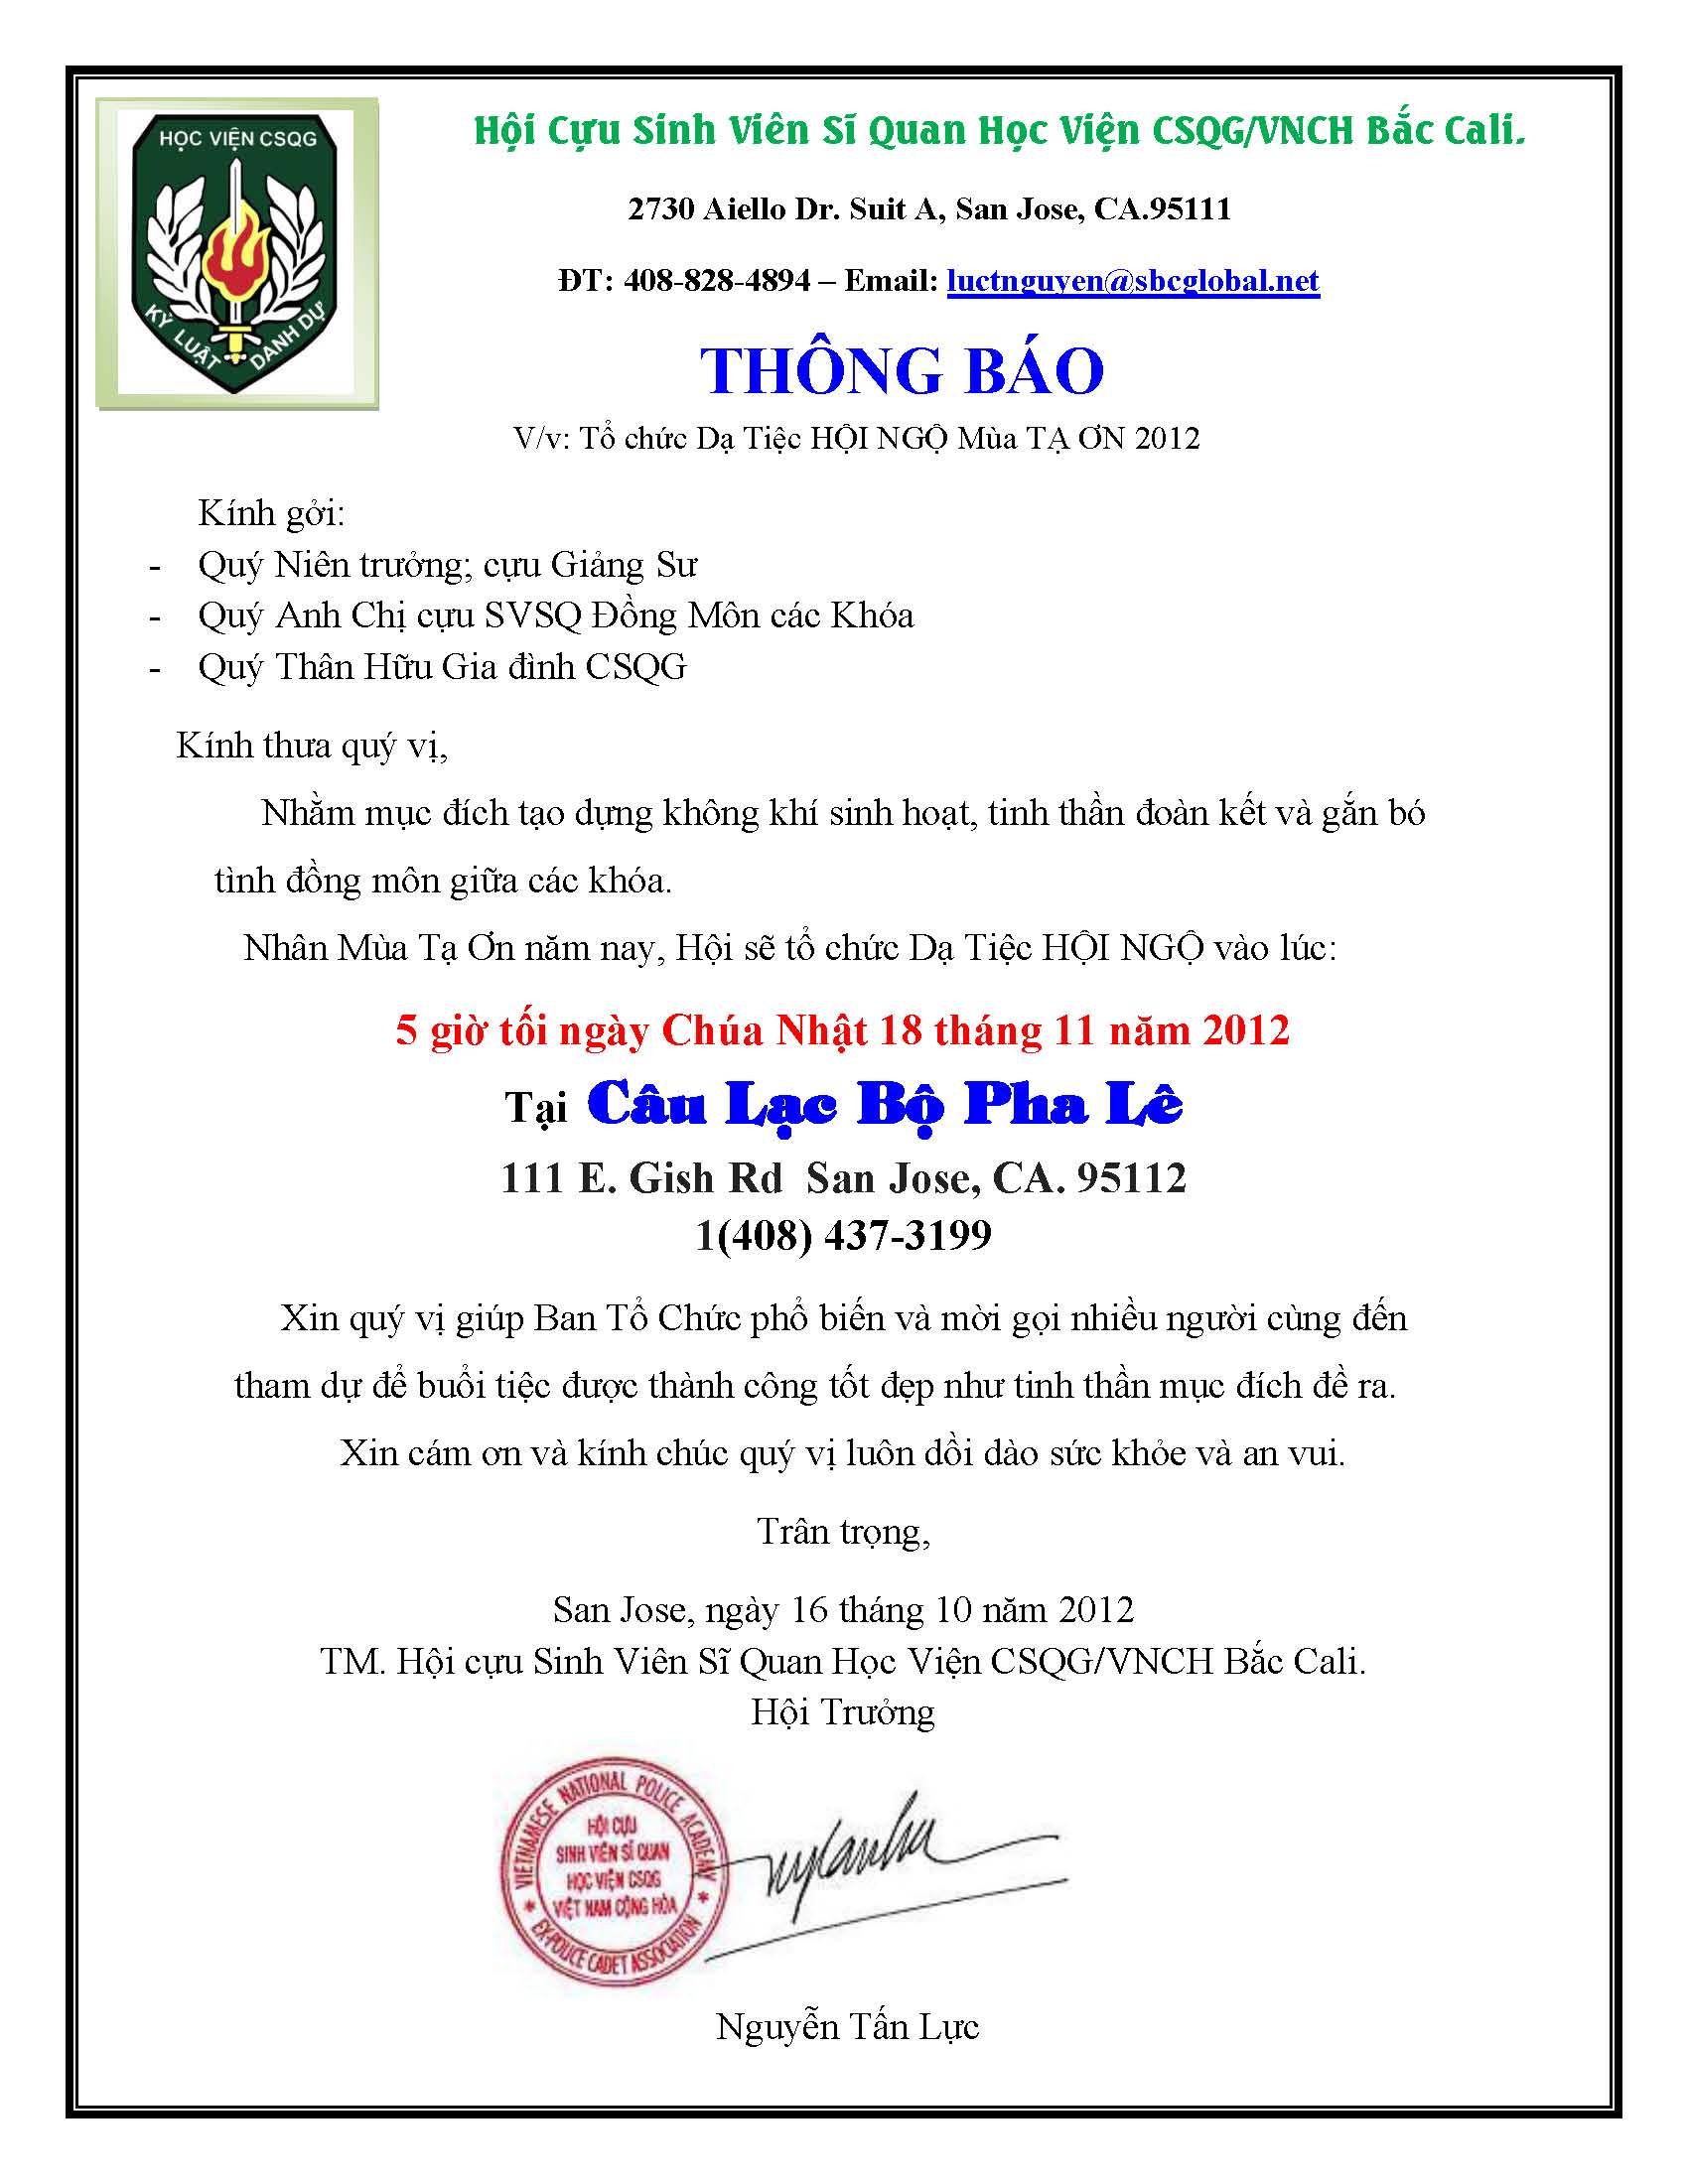 Thong Bao_Da_Tiec_2012